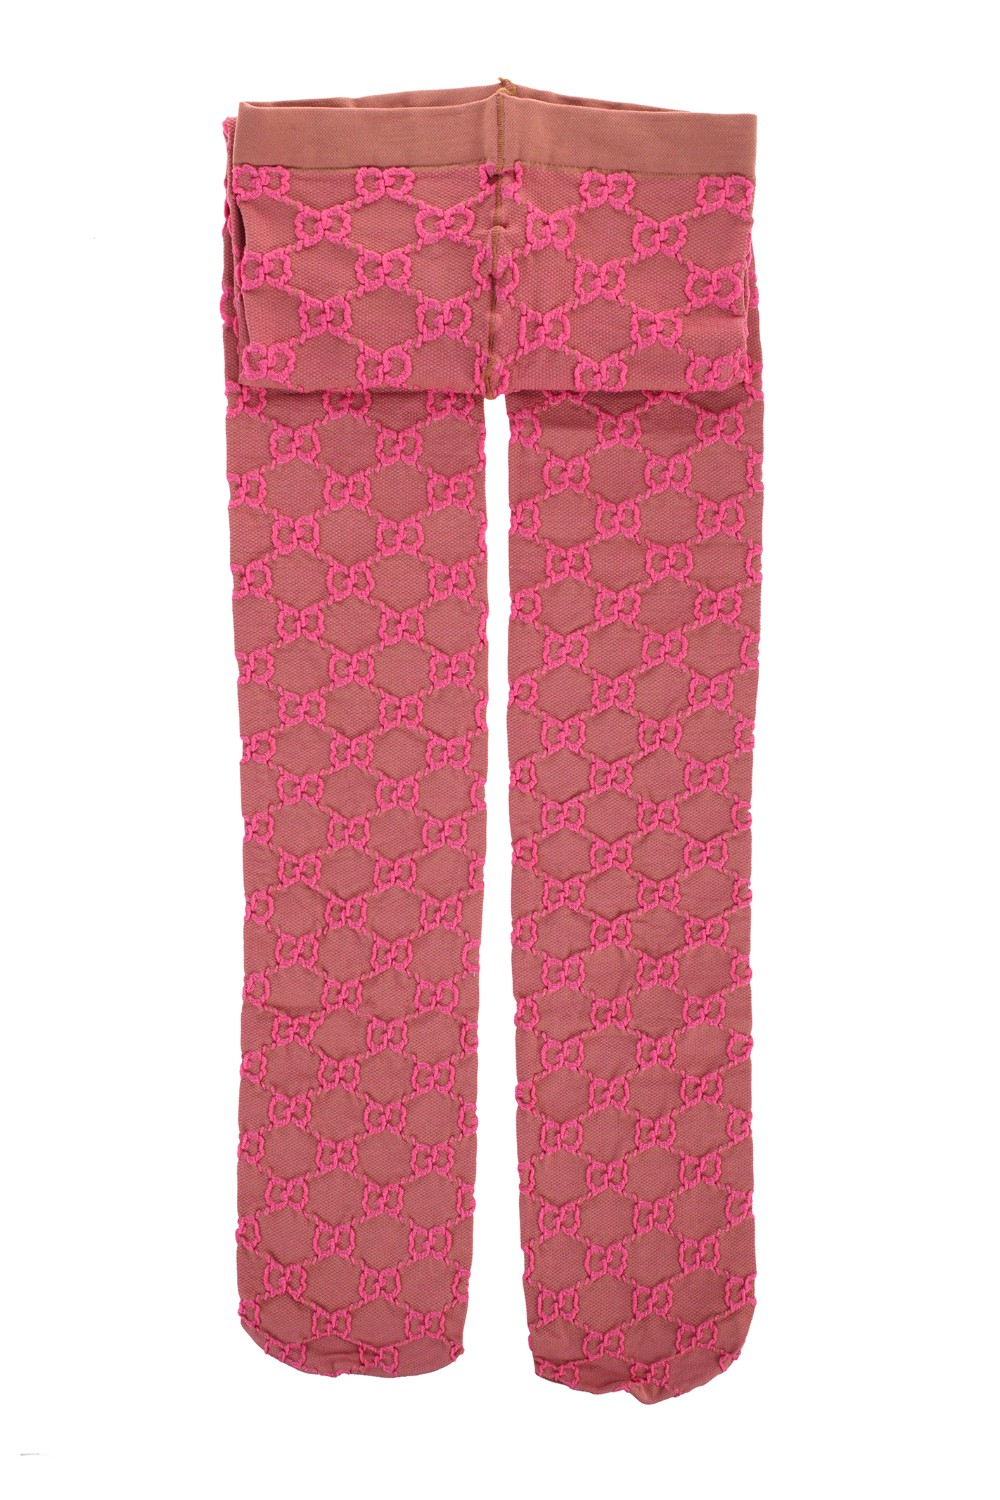 shop GUCCI Saldi Collant: Gucci collant con motivo GG beige e rosa.
Cintura elasticizzata con logo Gucci.
Composizione: 53% polipropilene 39% nylon e 8% elastan.
Made in Italy.. 600467 3GE76-9772 number 4174976